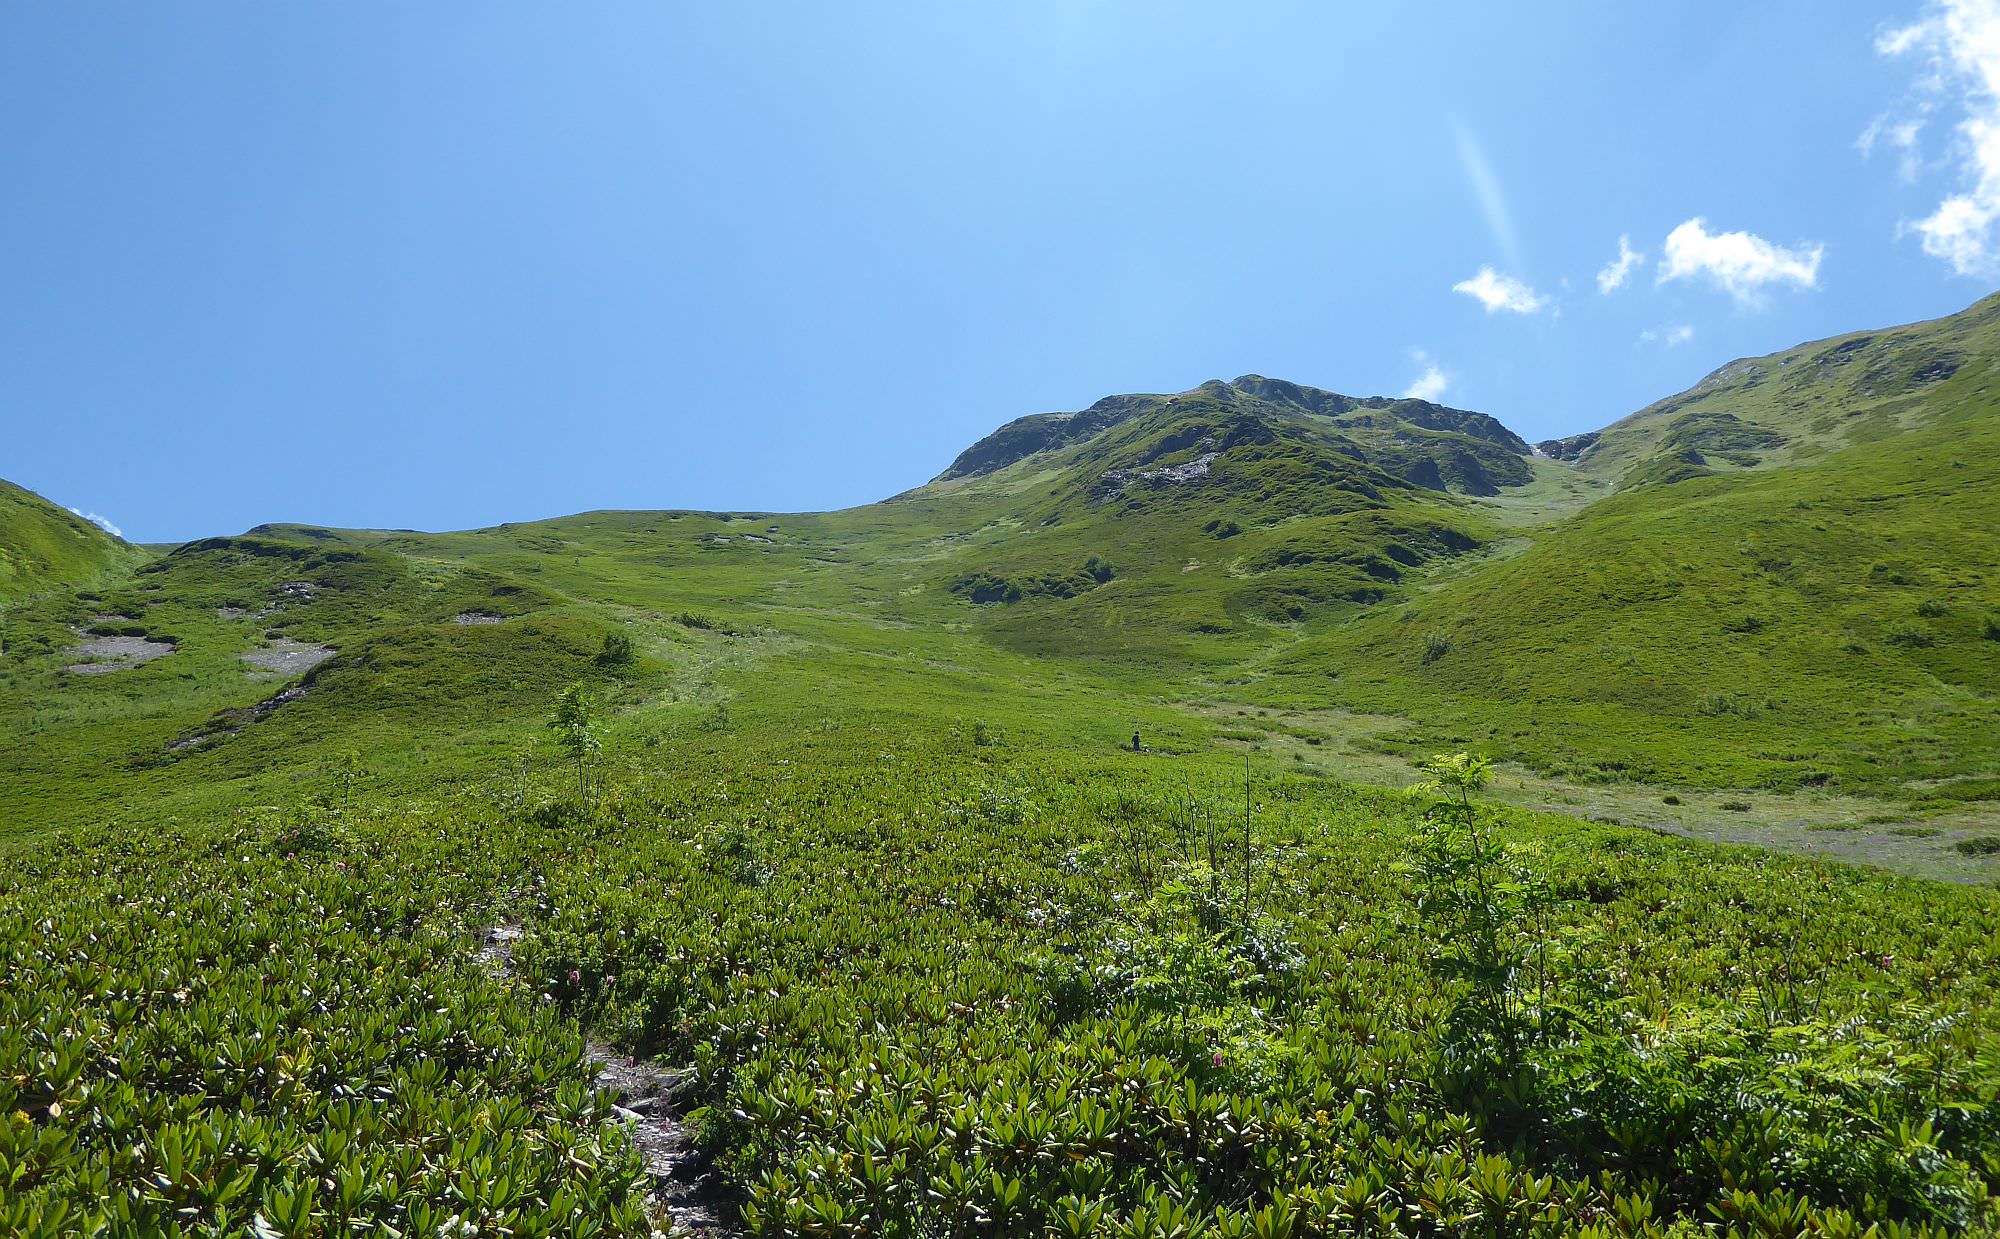 Climb to the Svaneti ridge